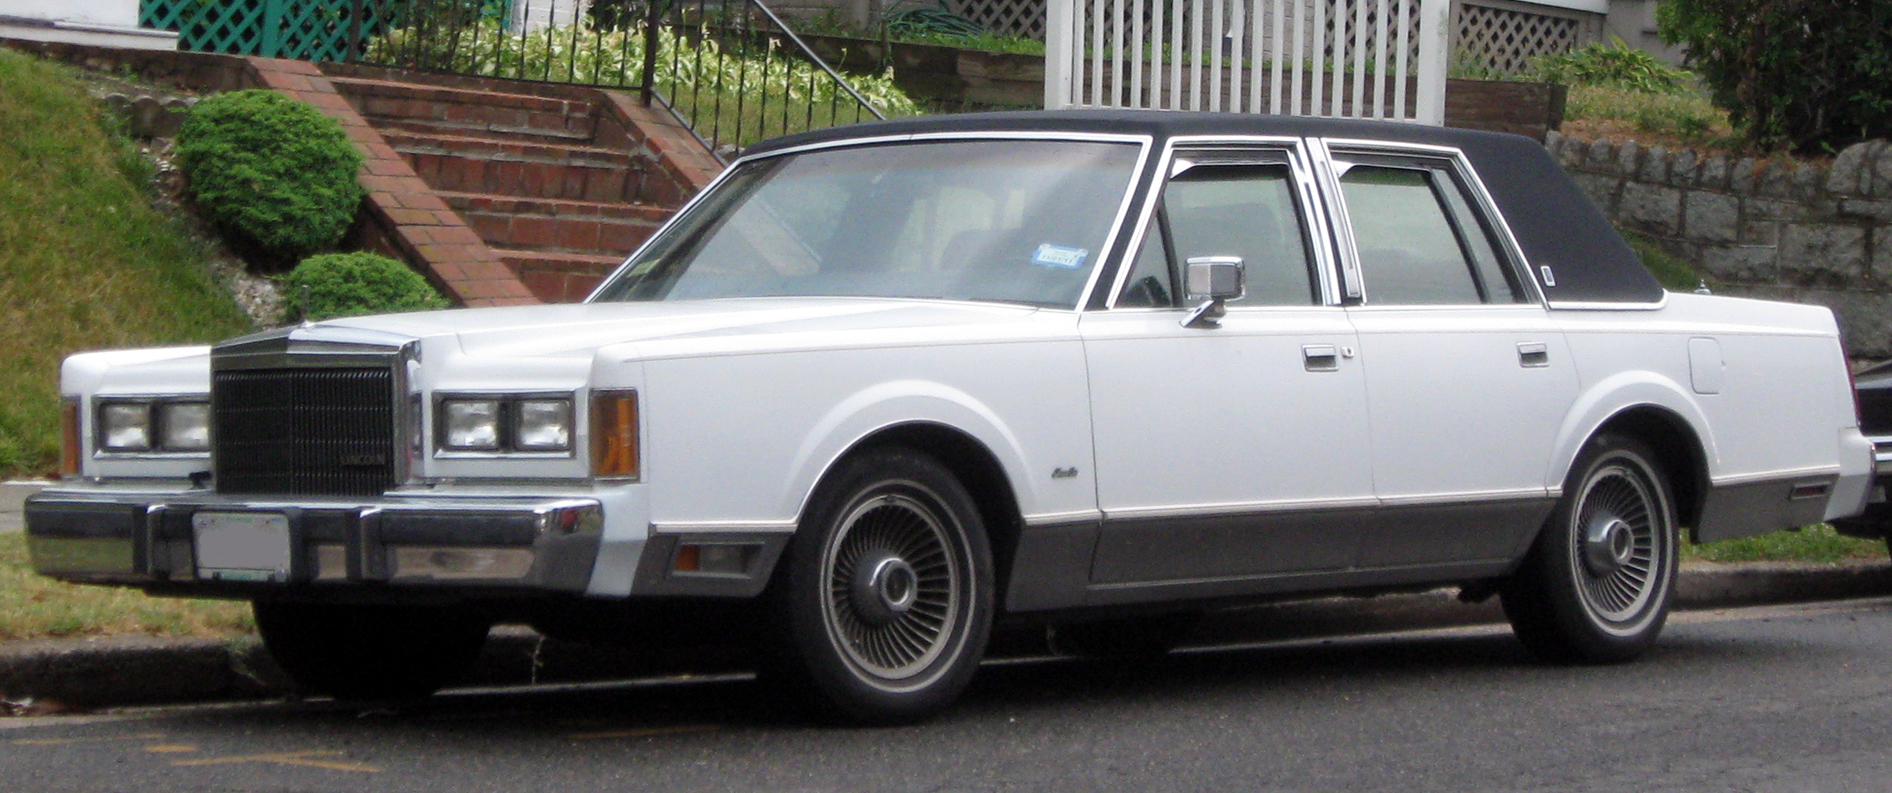 1989 Town Car #1